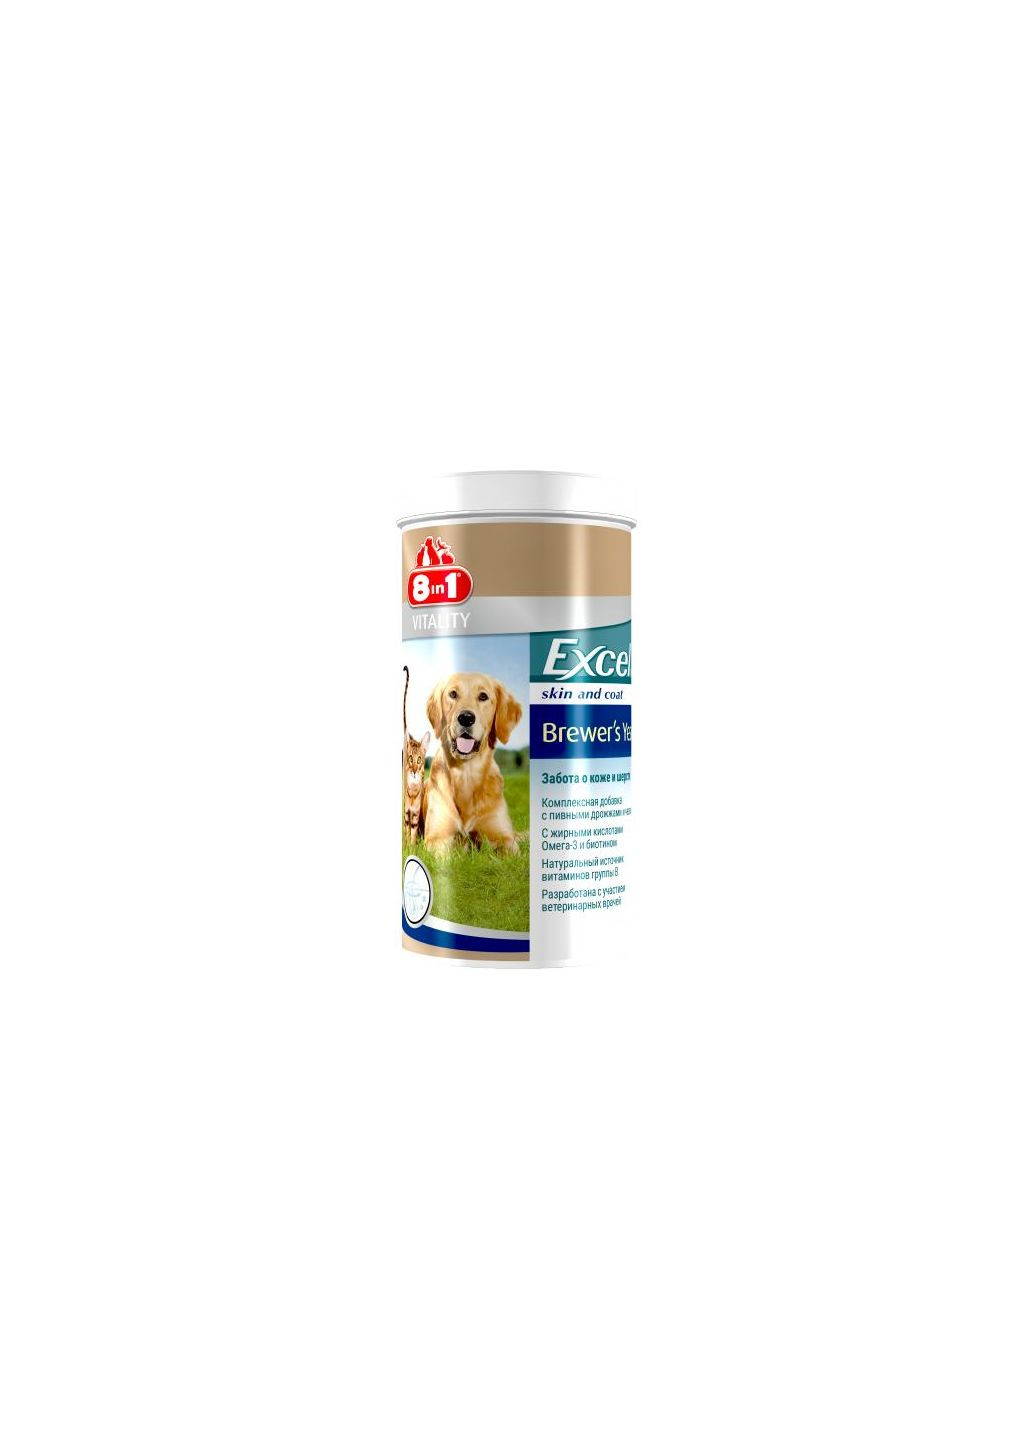 Пивні дріжджі для собак та кішок Excel Brewers Yeast, 780 таблеток 8in1 (292260160)